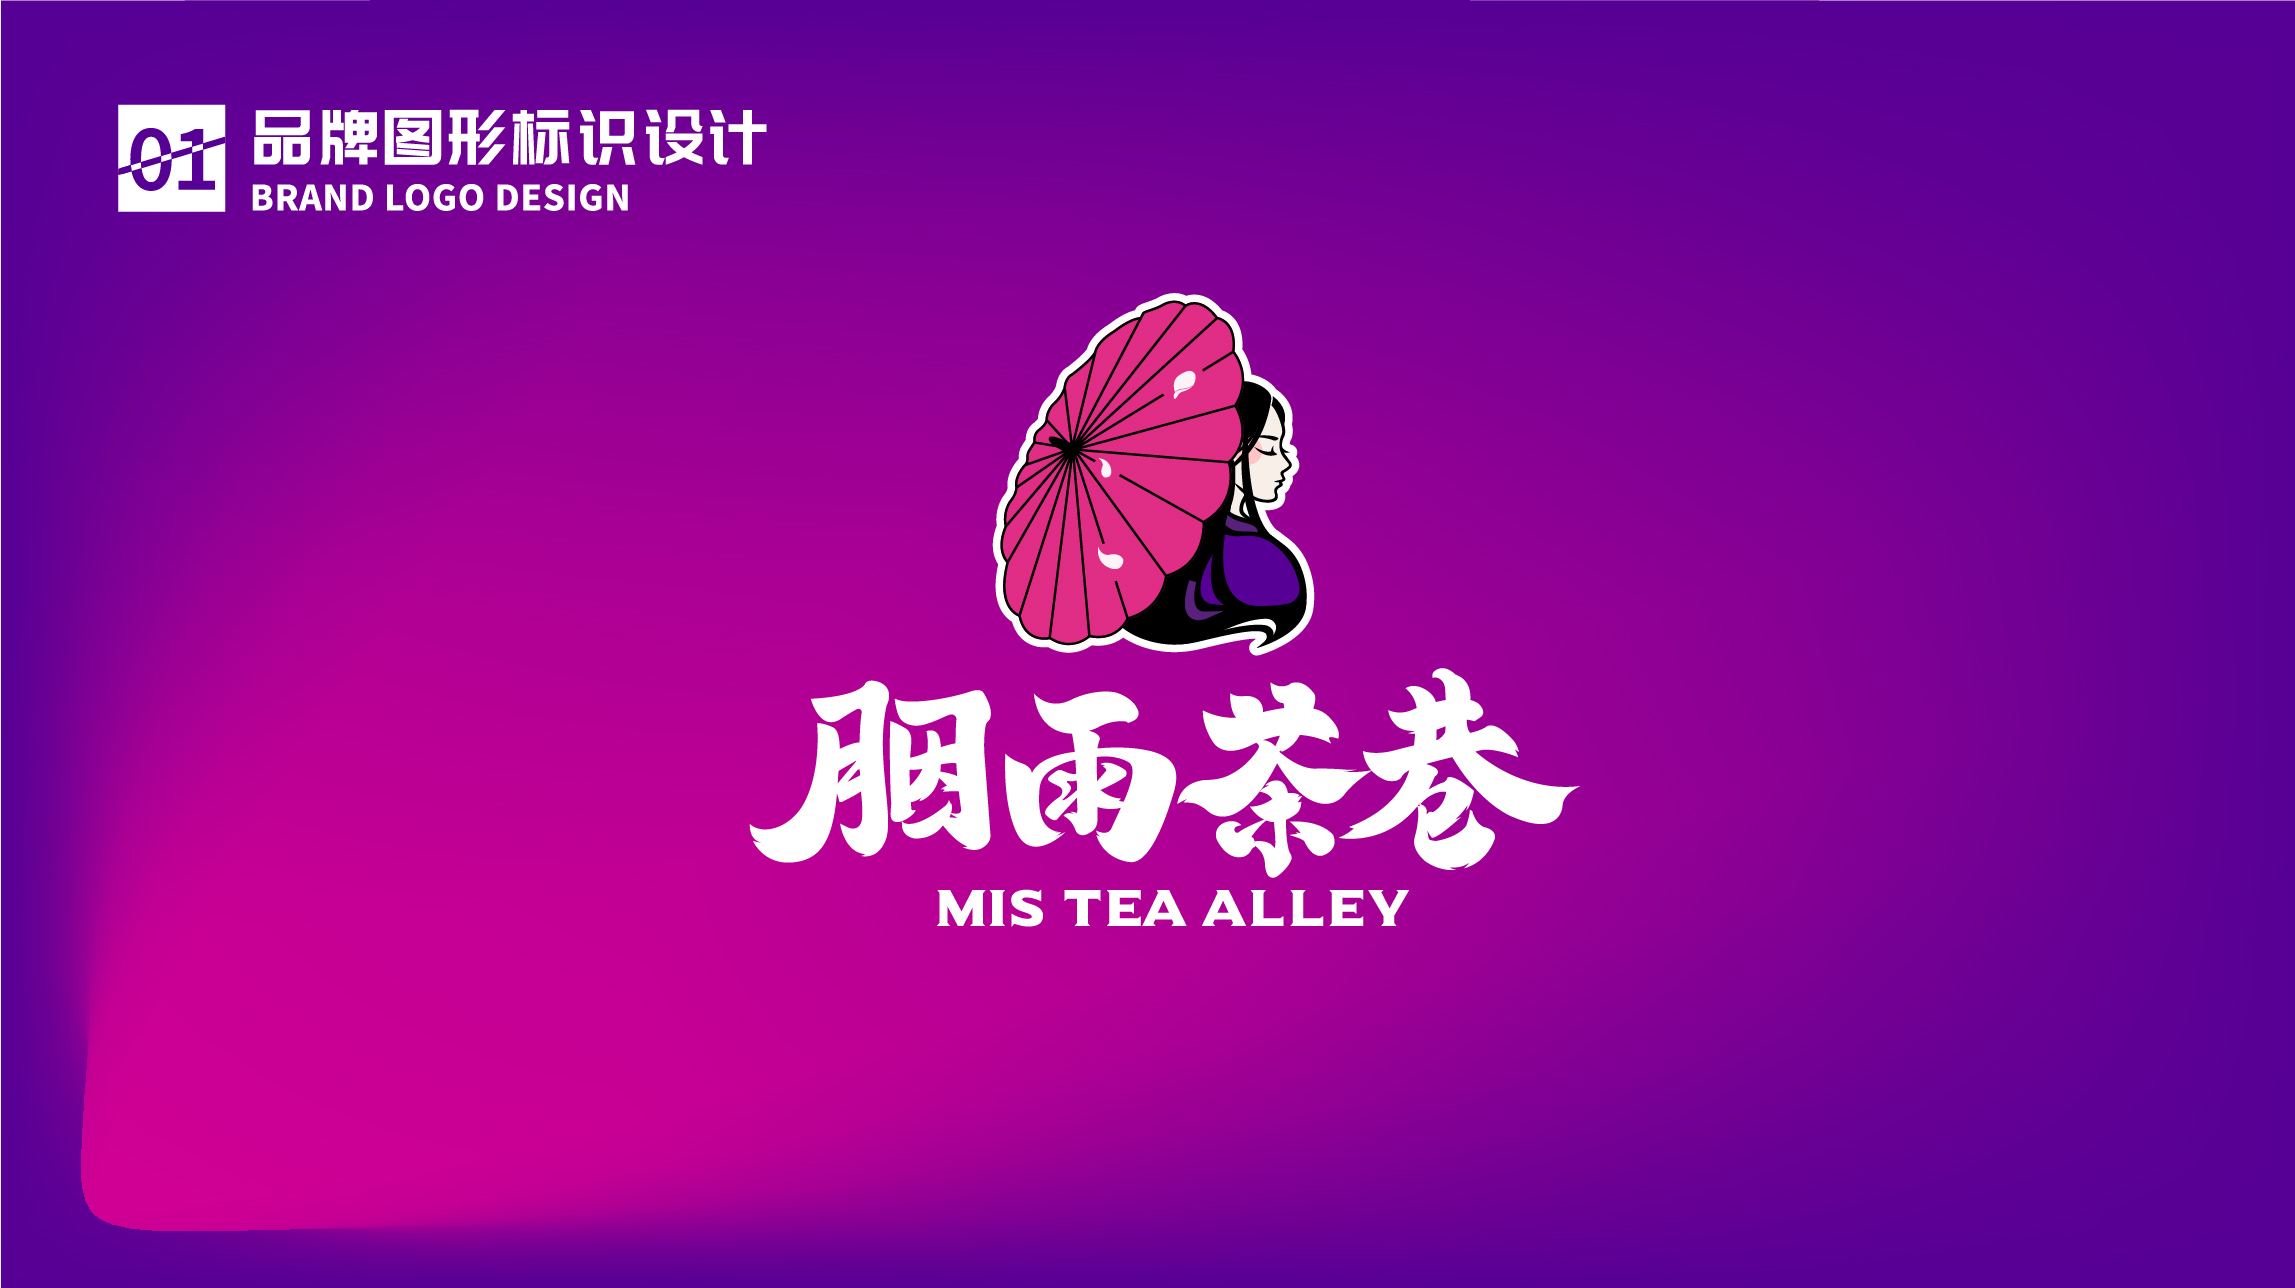 茶饮品牌胭雨茶巷LOGO设计